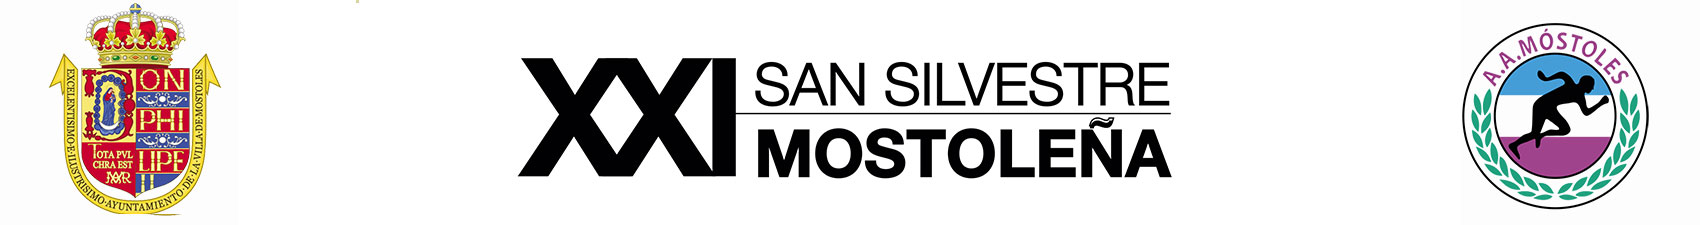 XXI San Silvestre Mostolea - Benjamn y Alevn